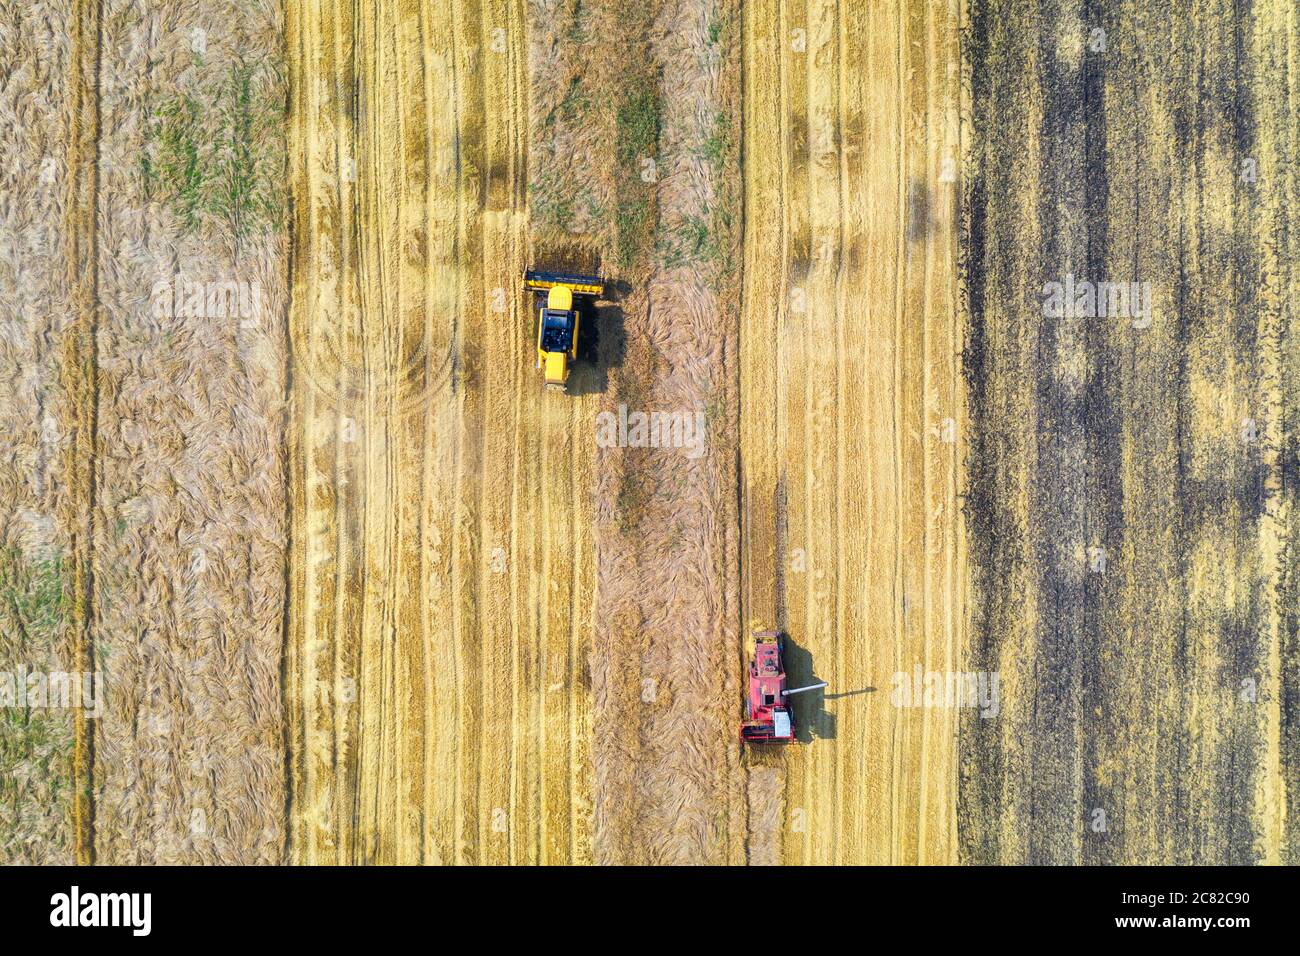 La vista aérea de la cosechadora está cosechando trigo en verano Foto de stock